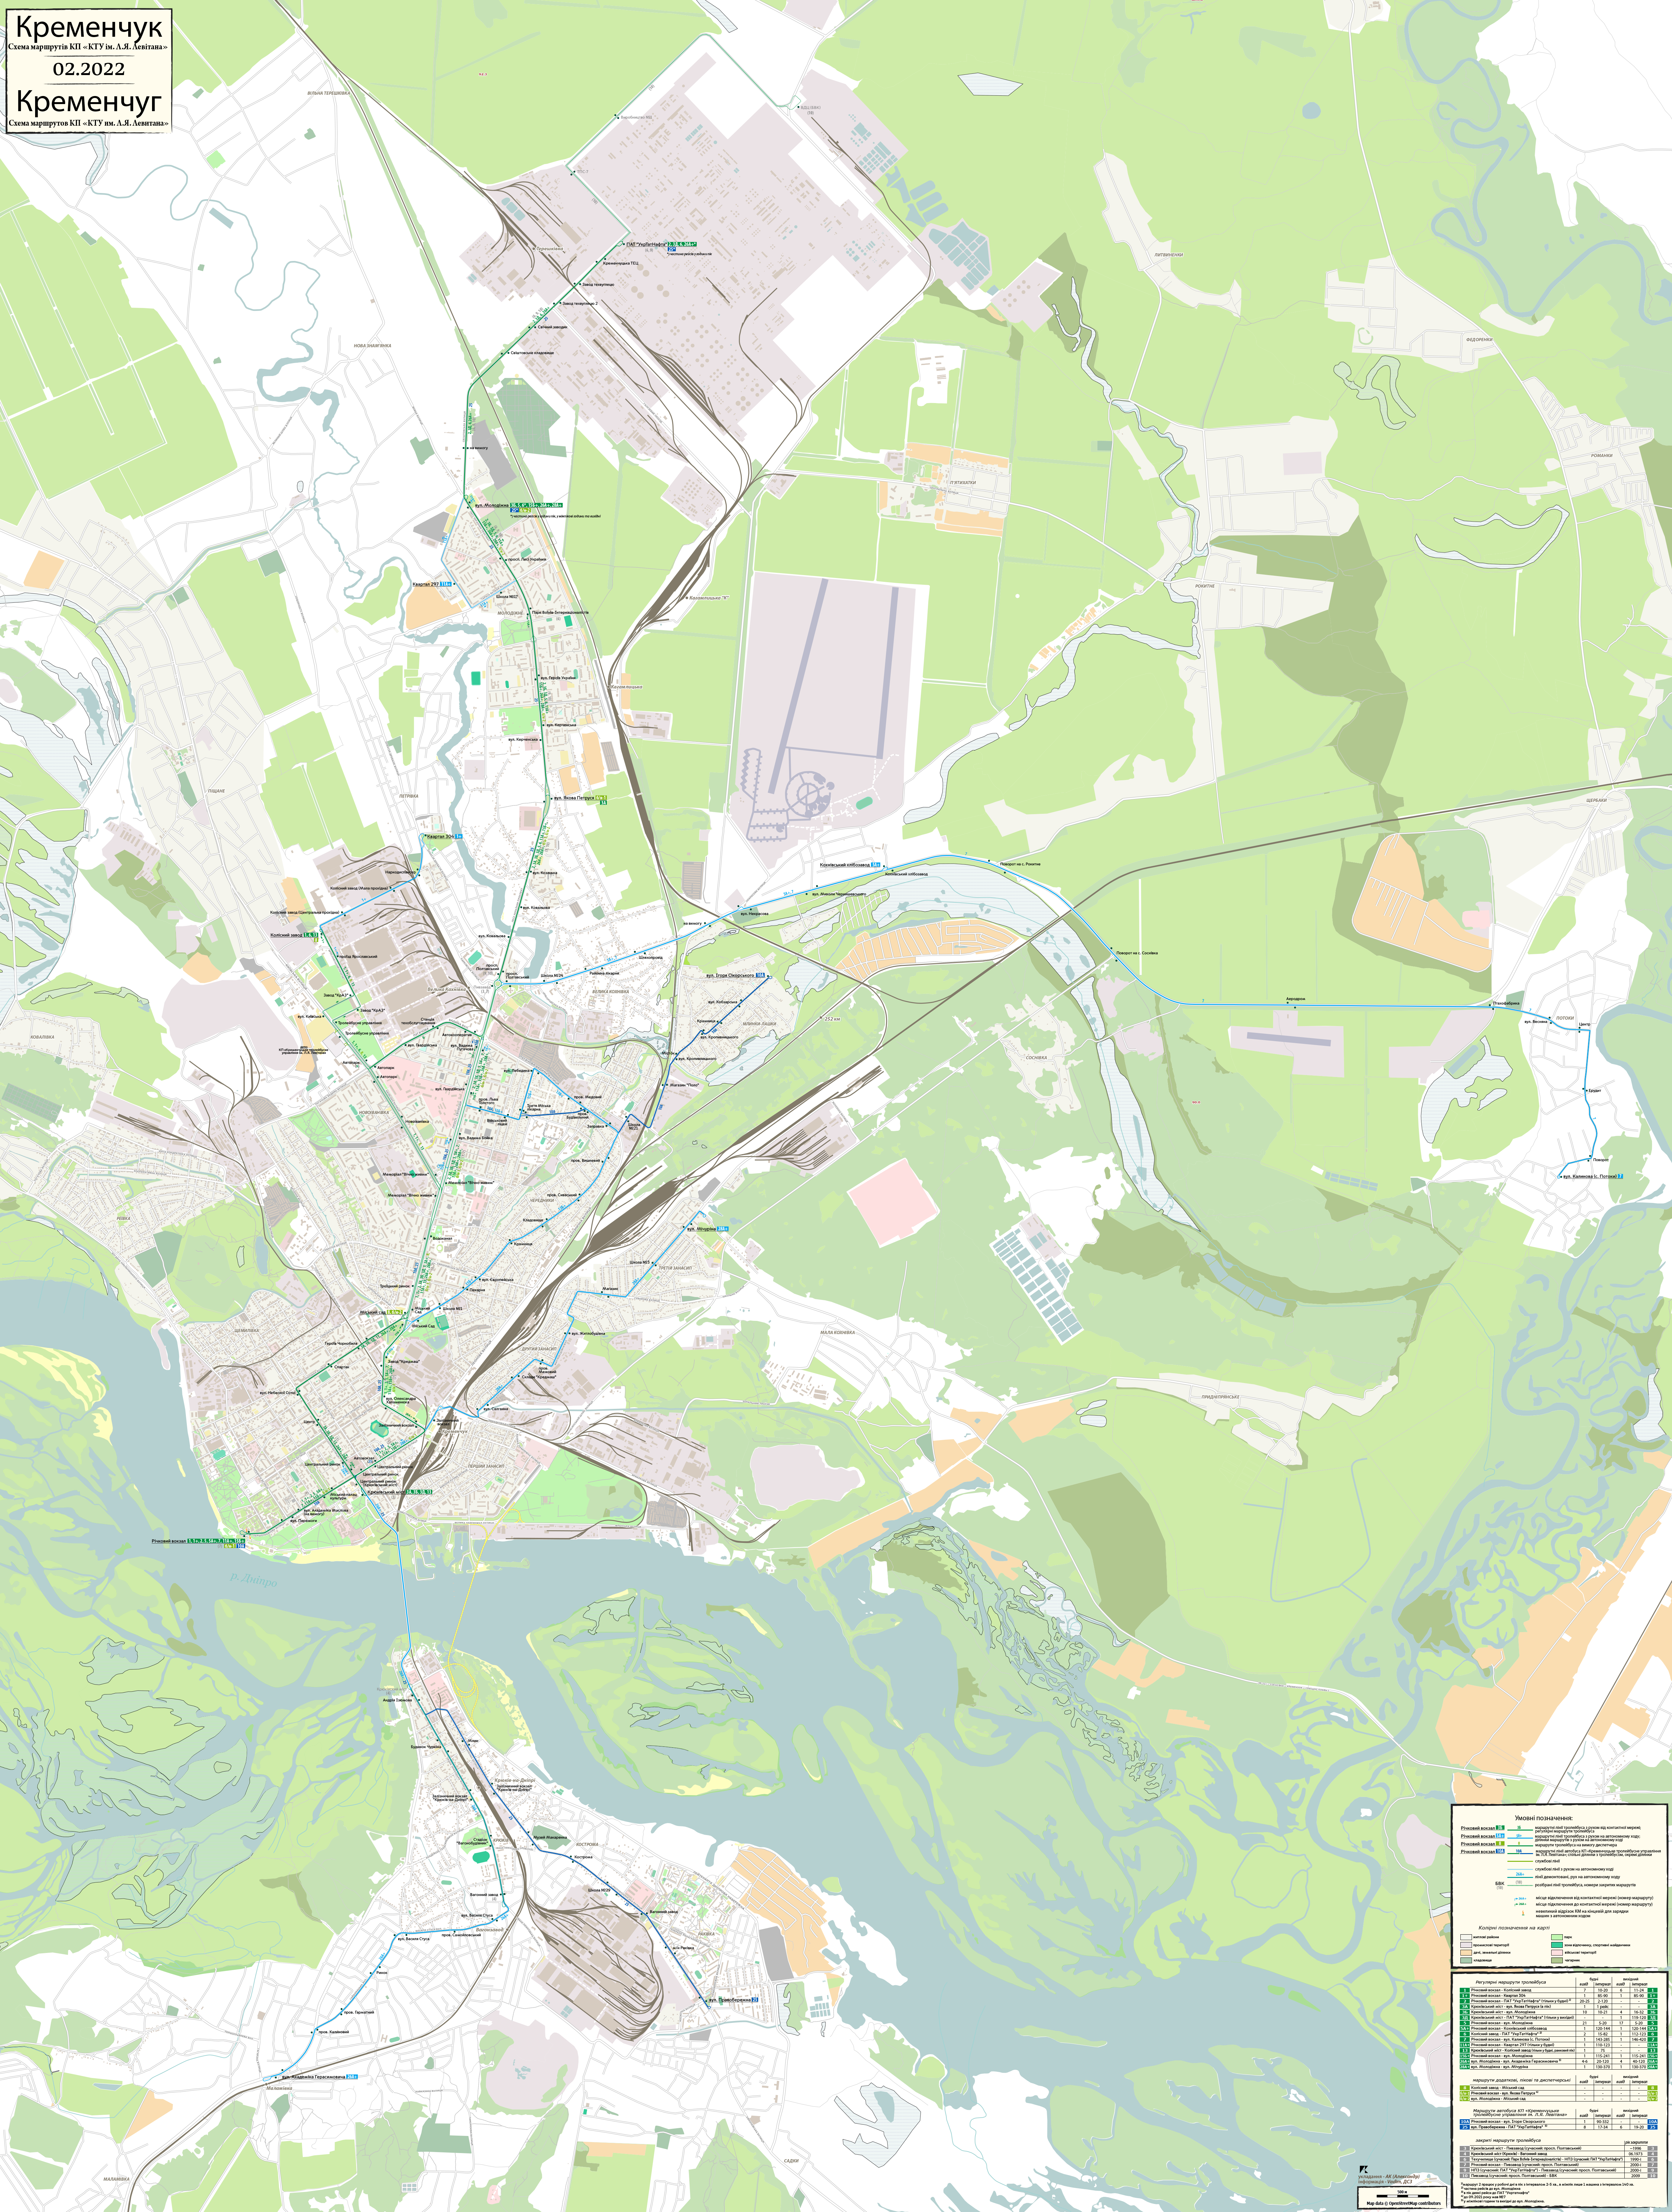 Кременчуг — Oбщегородские схемы; Карты, созданные с использованием OpenStreetMap